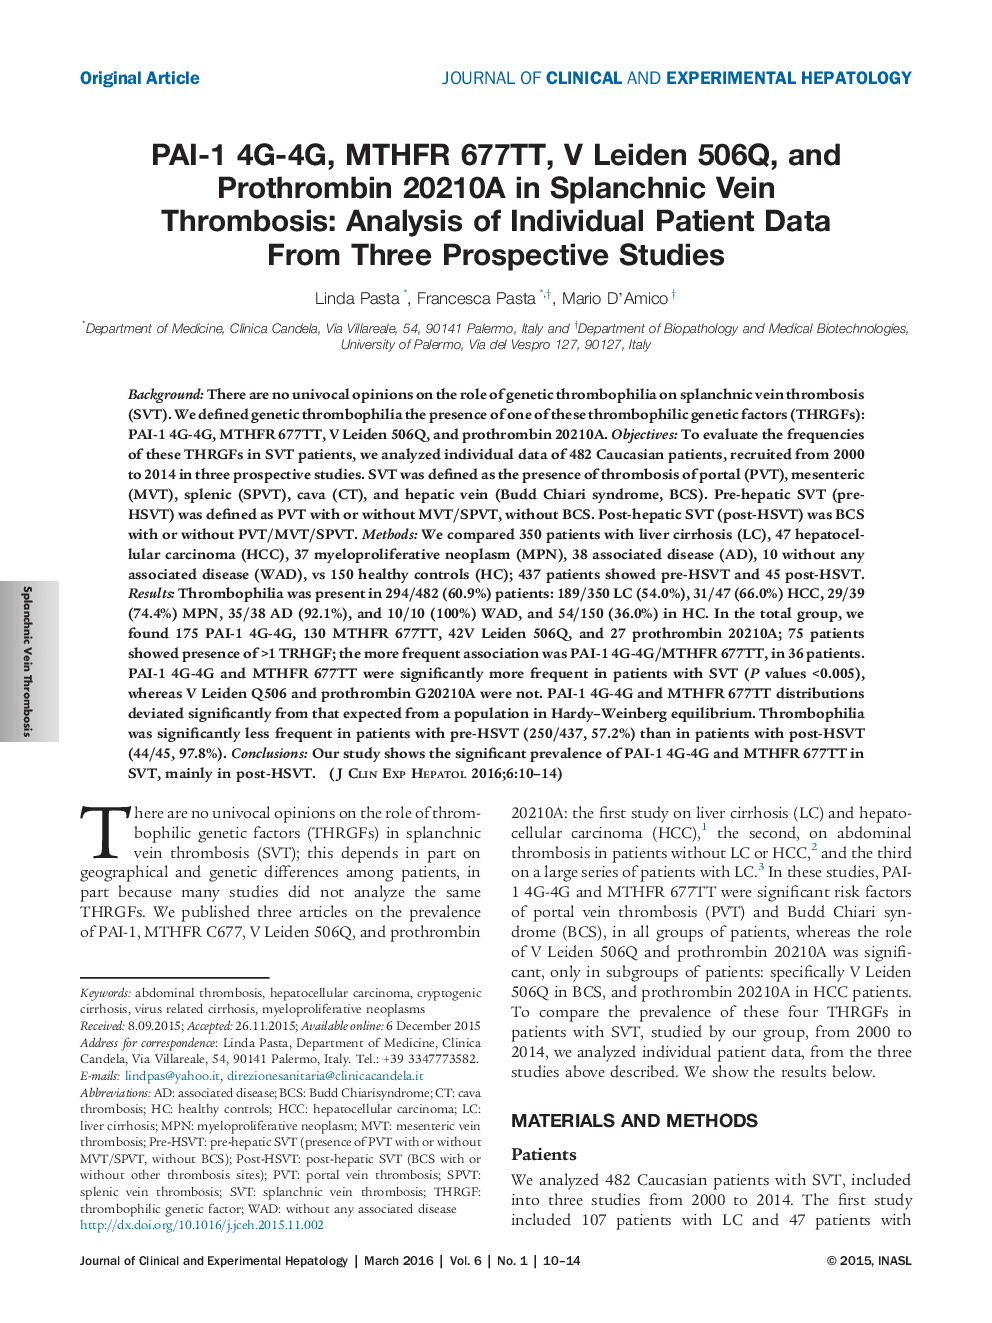 PAI-1 4G-4G، MTHFR 677TT، V 506Q، و پروترومبین 20210A در ترومبوز ورید احشایی: تجزیه و تحلیل داده های فردی بیمار از سه مطالعه آینده نگر